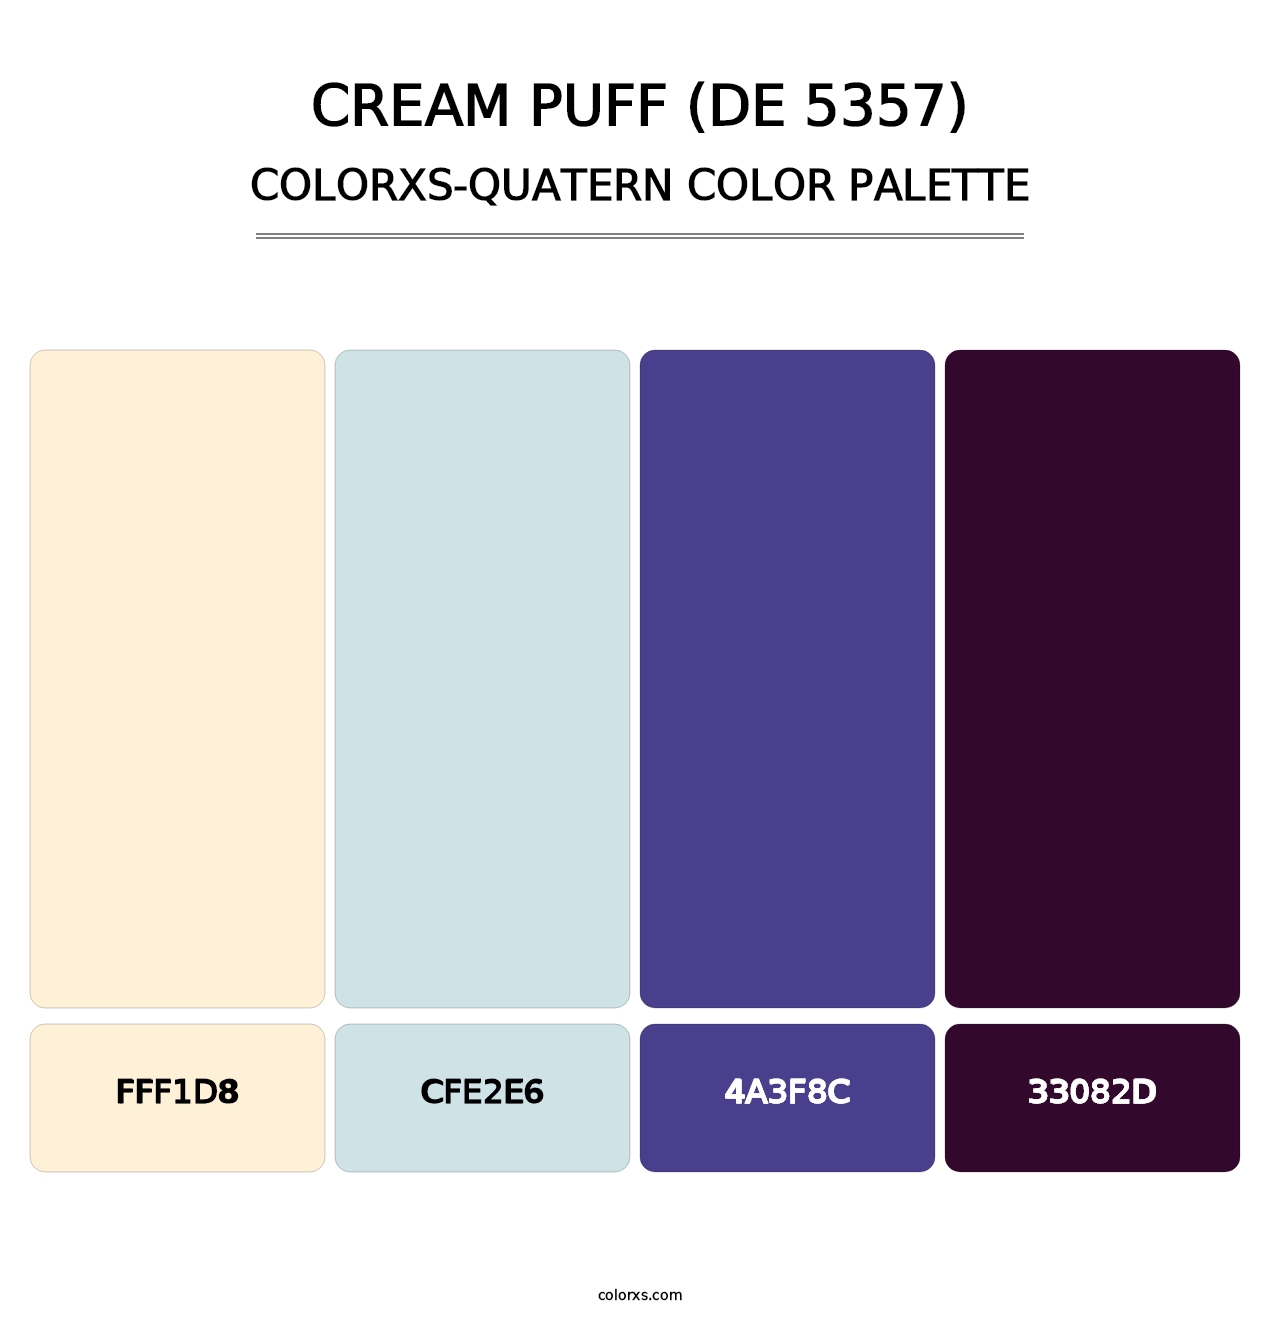 Cream Puff (DE 5357) - Colorxs Quatern Palette